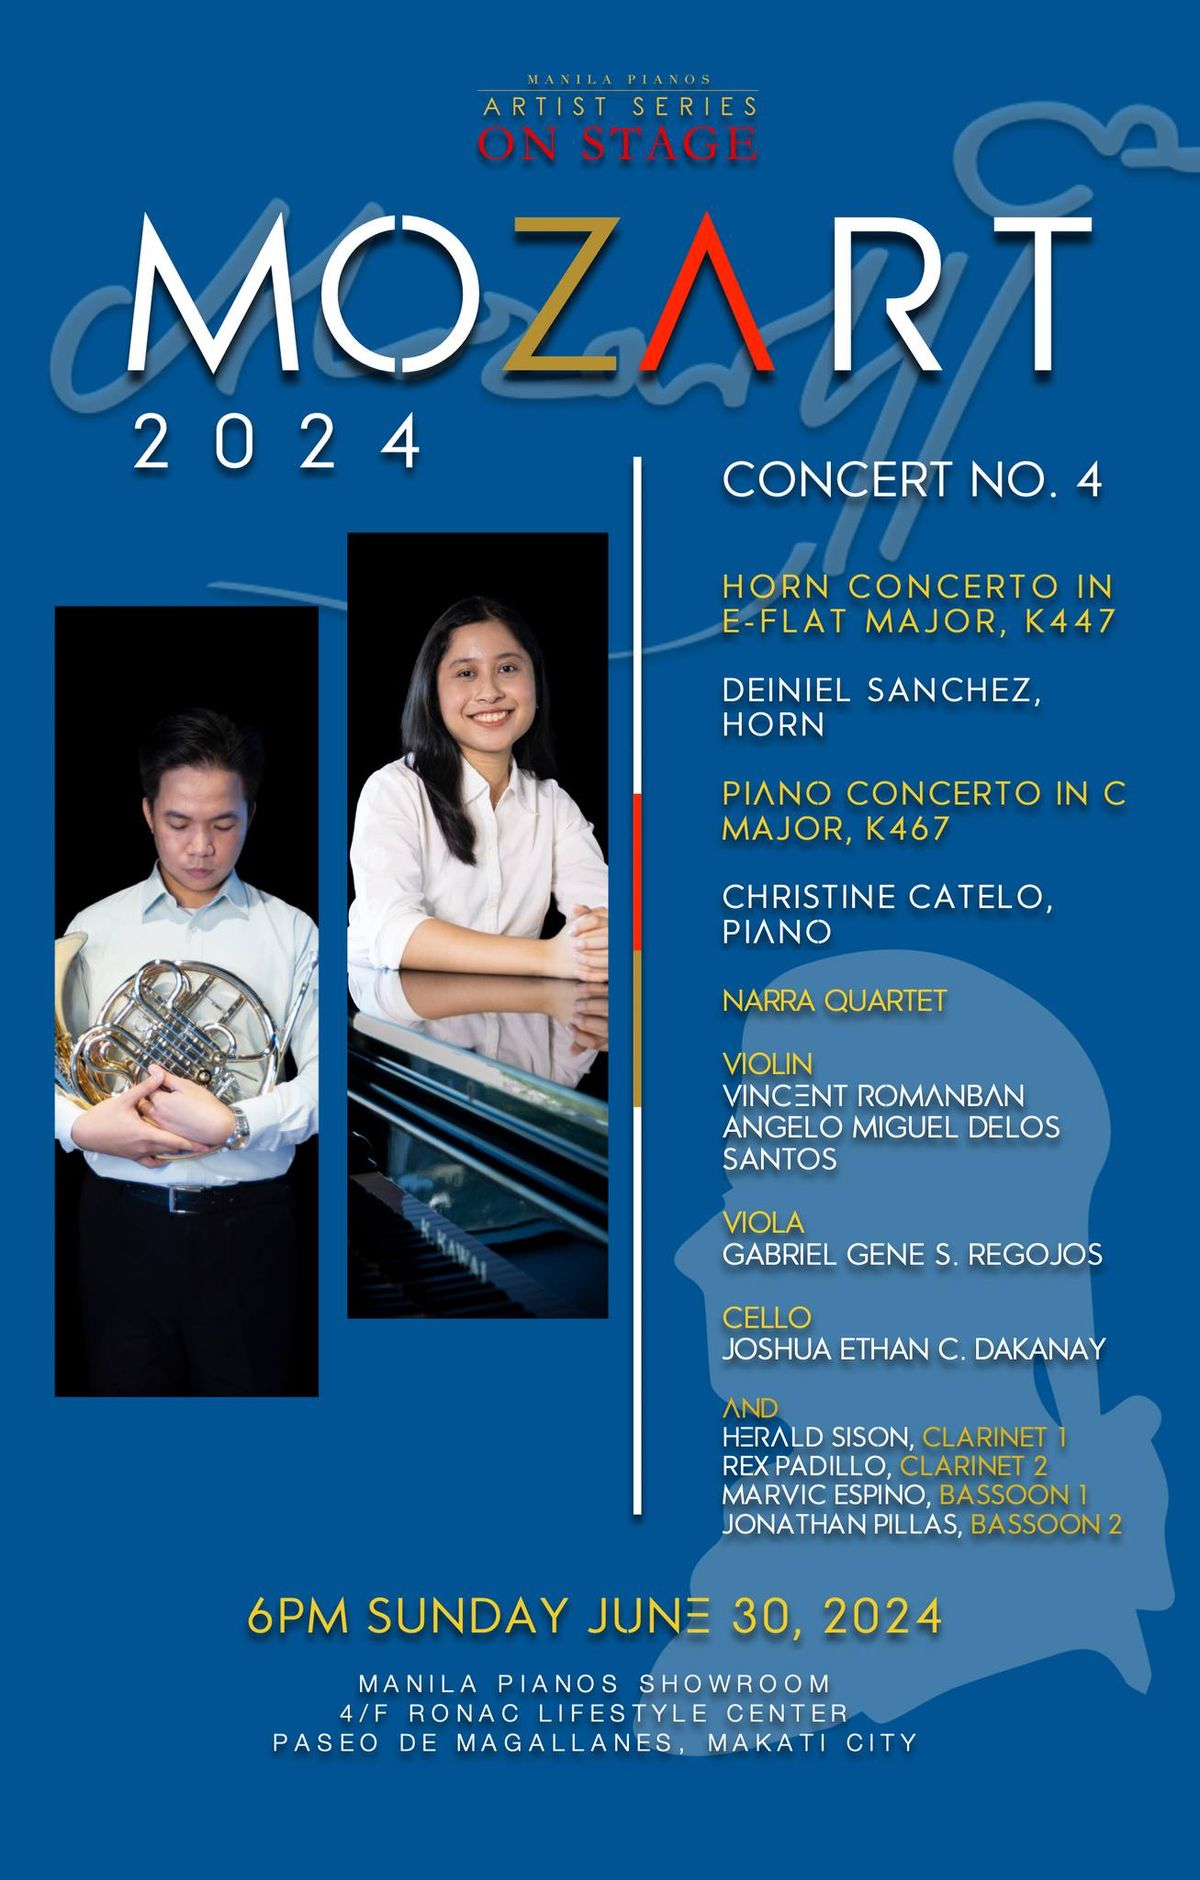 MOZART 2024 - Concert No. 4